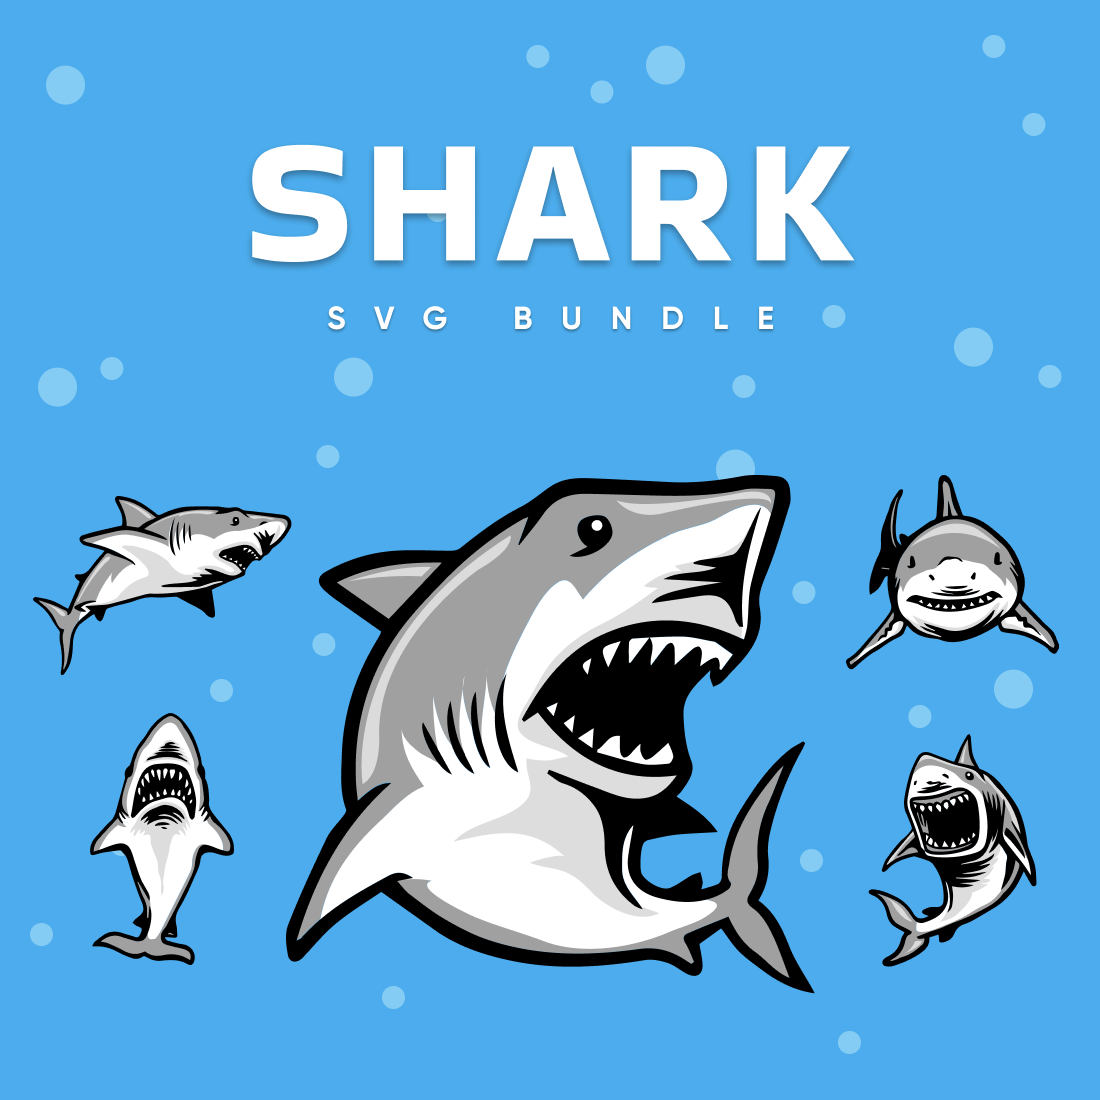 Shark SVG Files Bundle cover image.